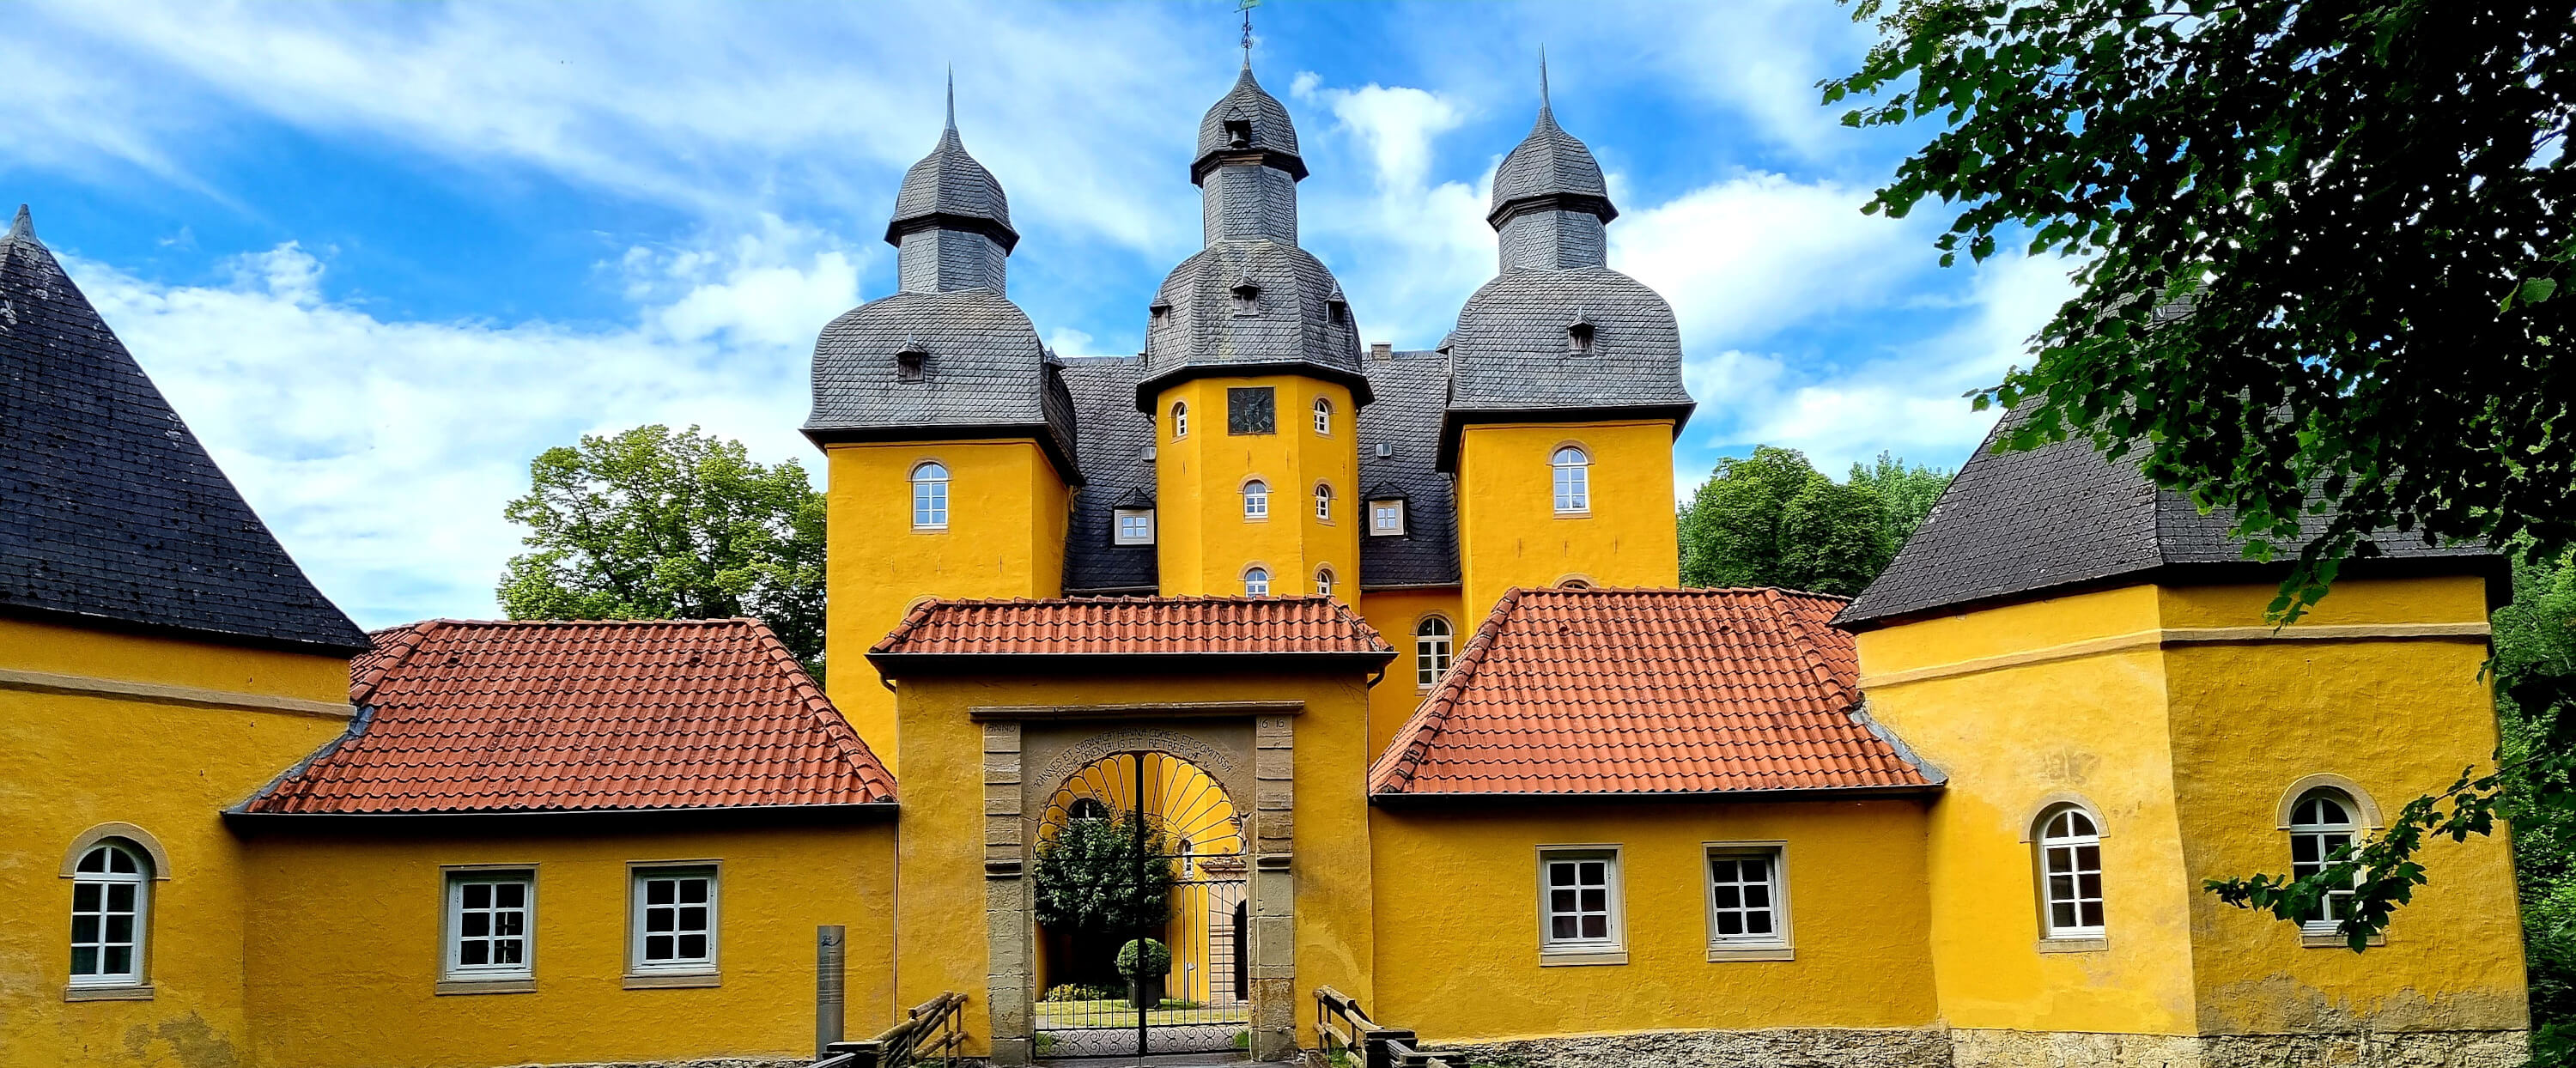 BIld vom Jagdschloss im Teutoburger Wald in der Stadt Schloss Holte-Stukenbrock.